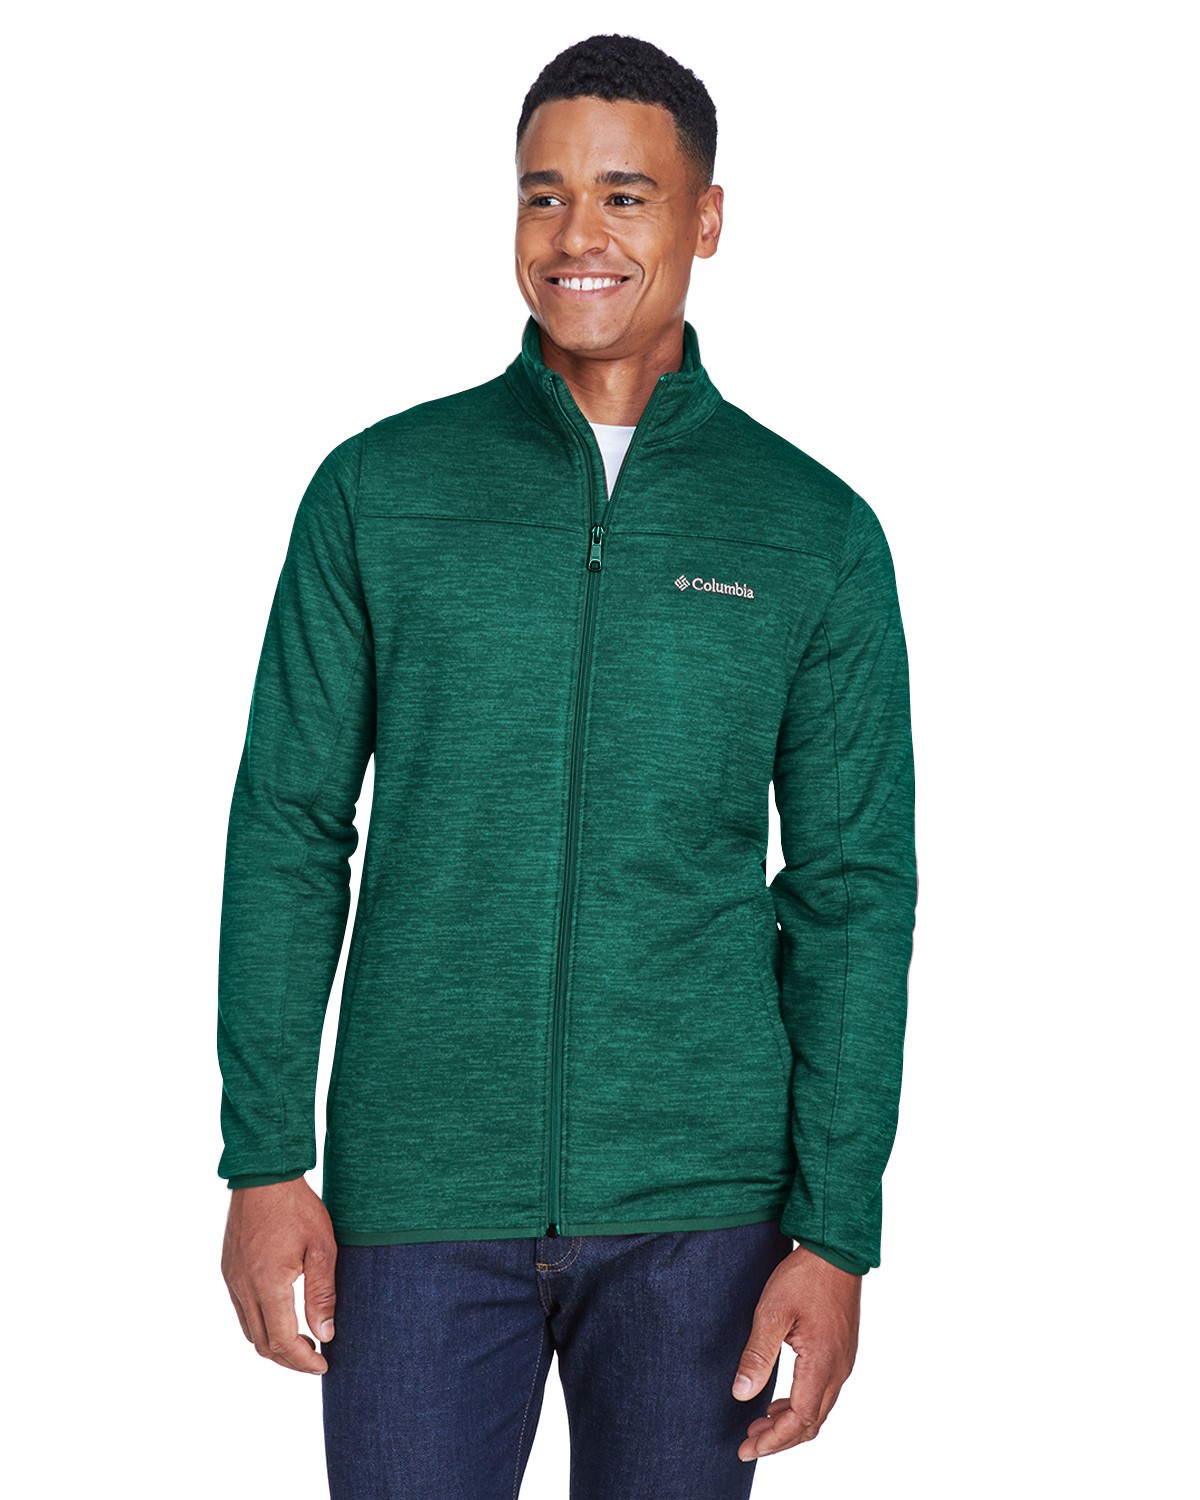 Columbia Green Fleece Full Zip Up Jacket Mens - beyond exchange